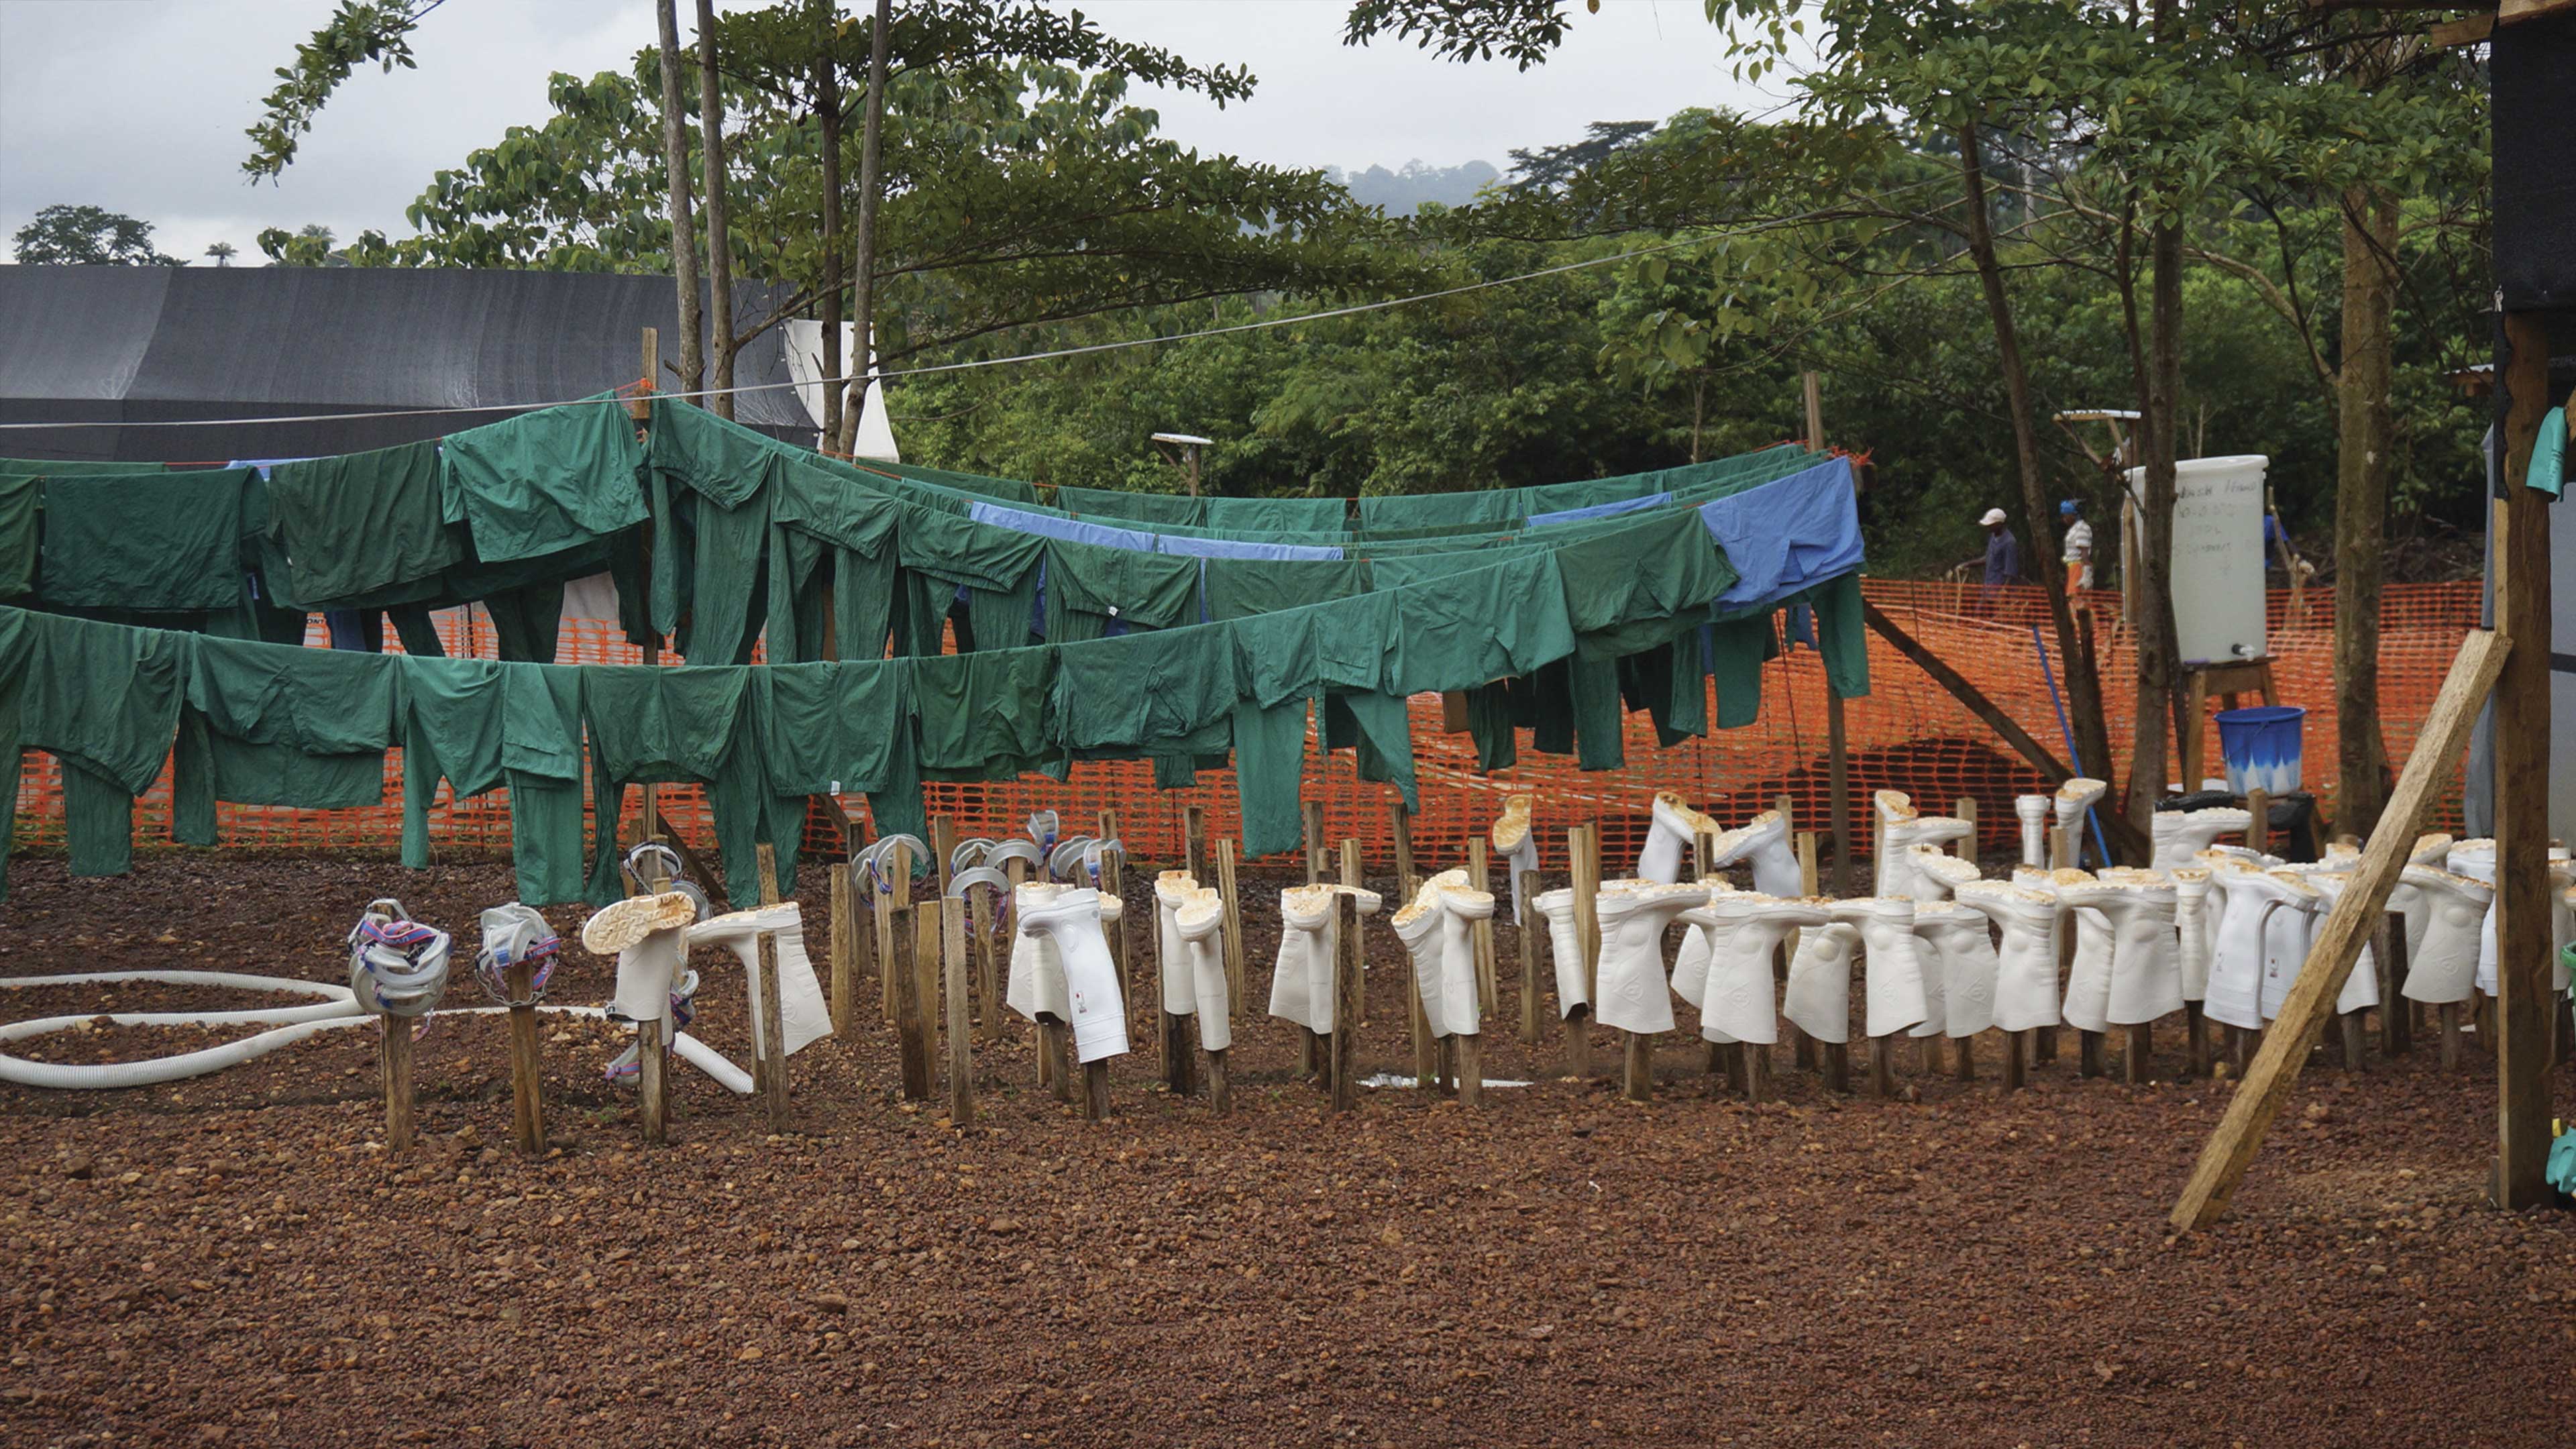 Ébola: retrato de una epidemia